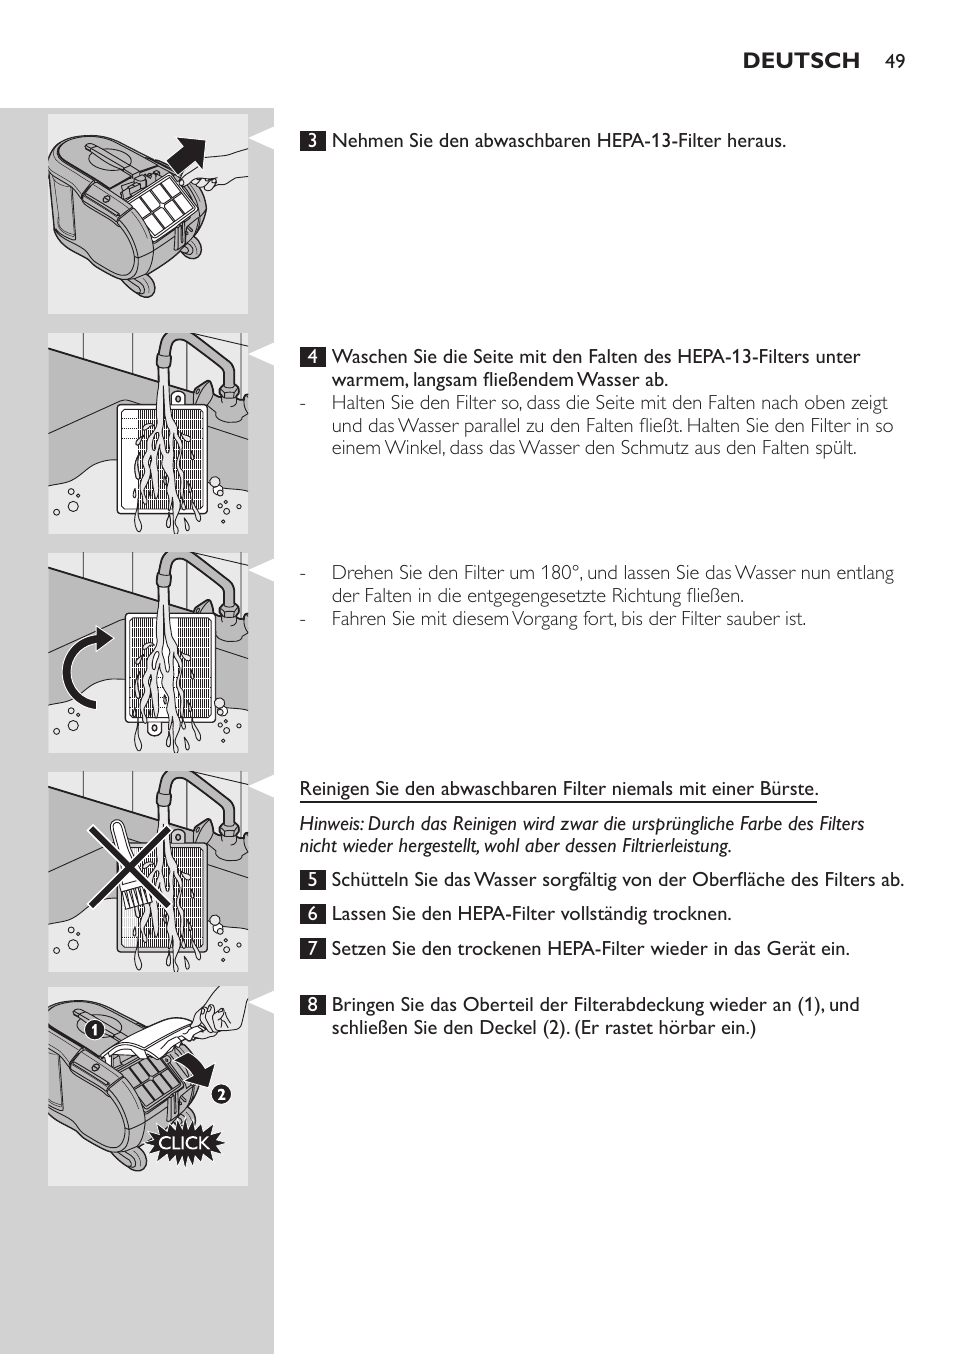 Reinigen des motorschutzfilters, Abwaschbarer ultra-clean-air-hepa-13-filter  | Philips ErgoFit Beutelloser Staubsauger User Manual | Page 49 / 218 |  Original mode